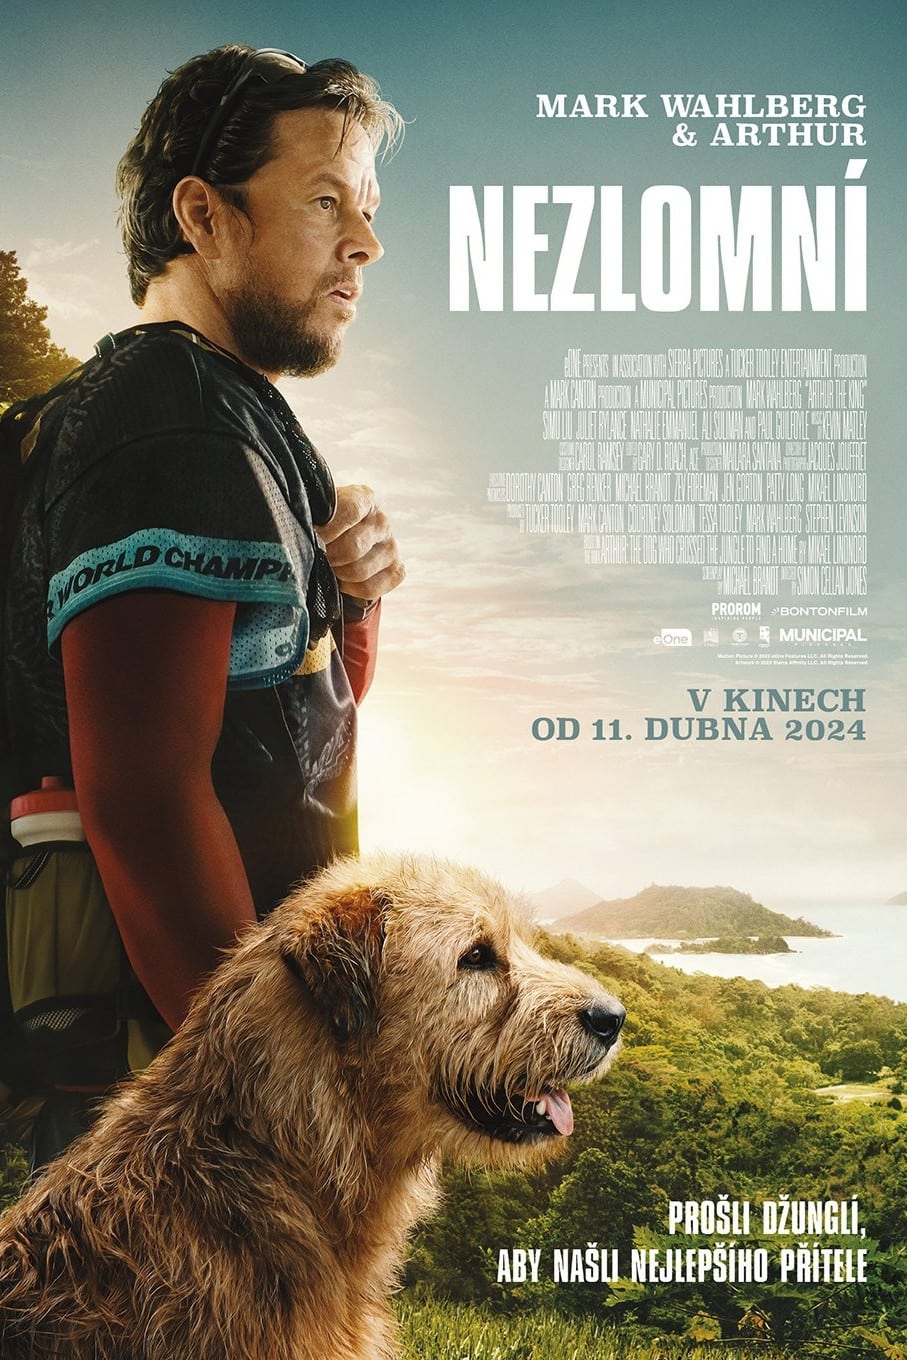 Poster for the movie "Nezlomní"